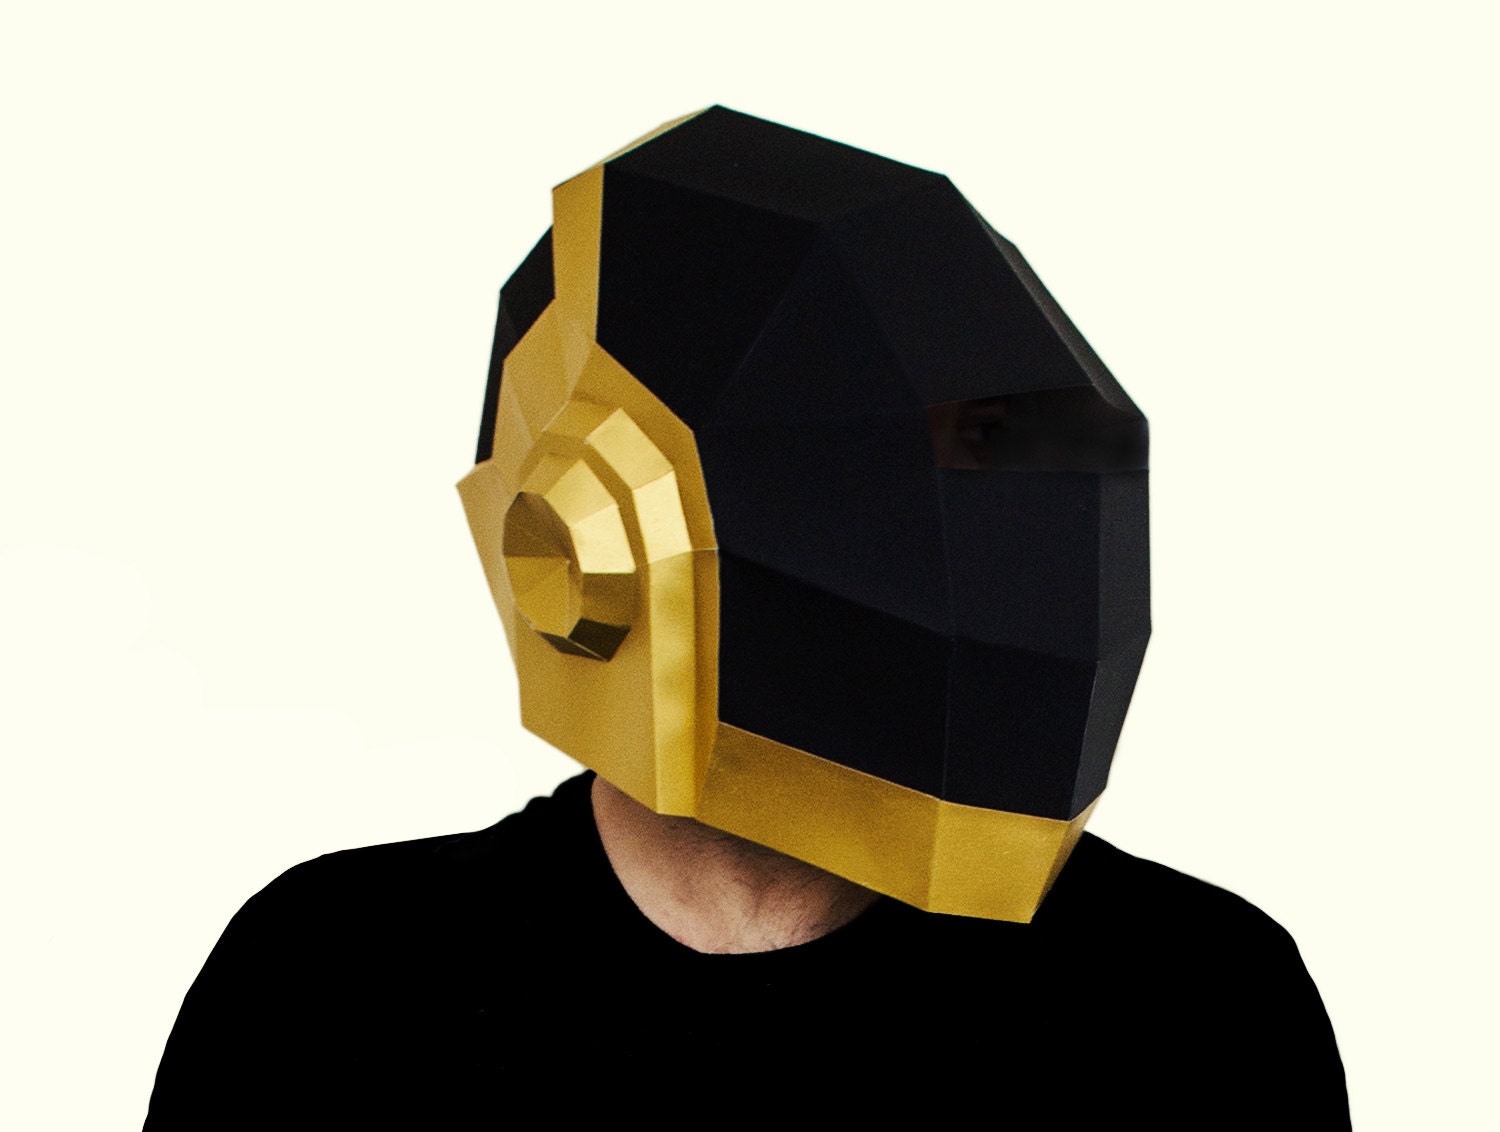 DIY Daft Punk Guy-Manuel de Homem-Christo mask by AwesomePatterns